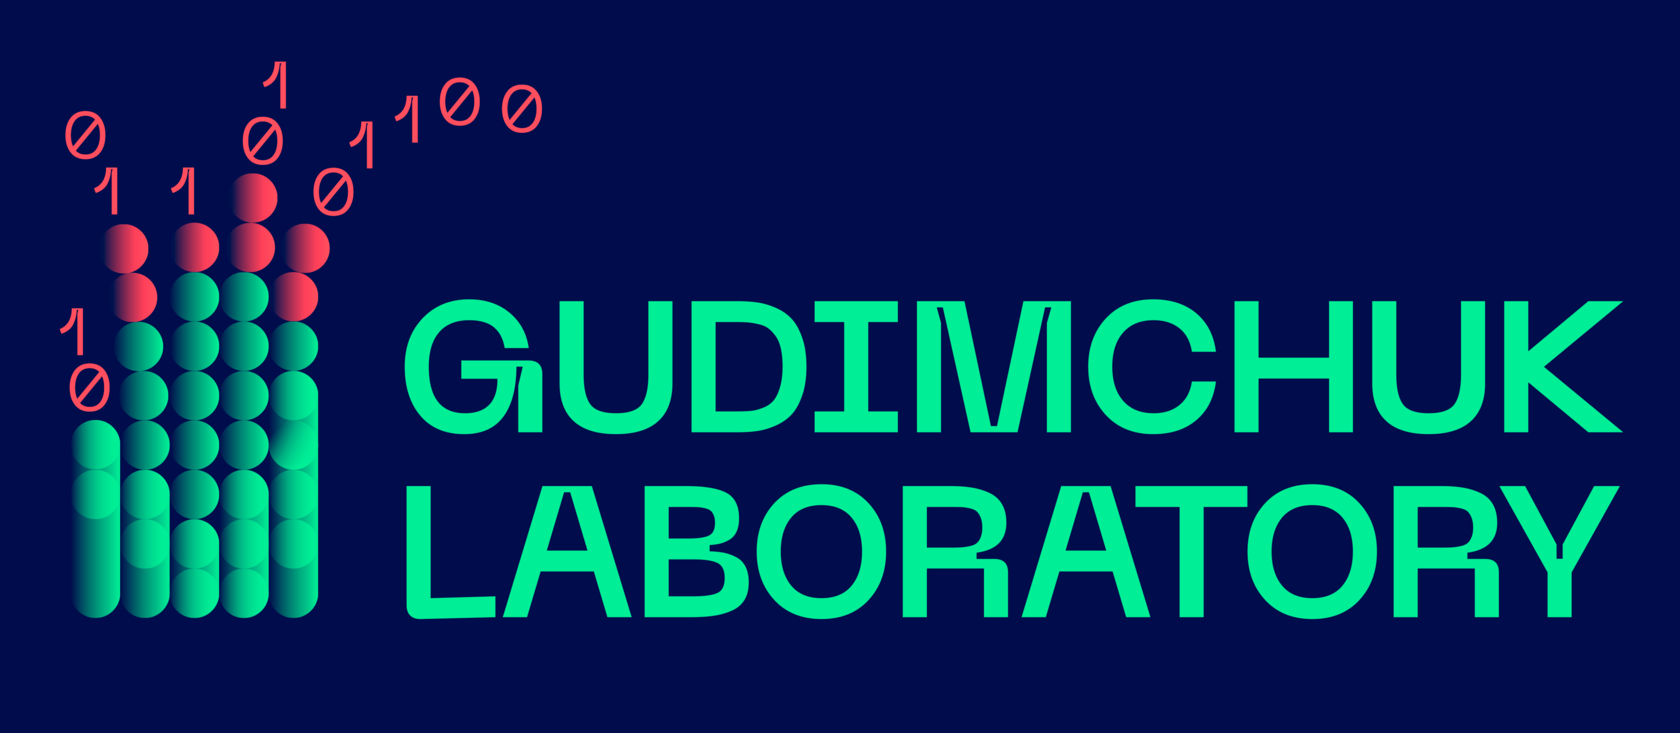 Gudimchuk Lab